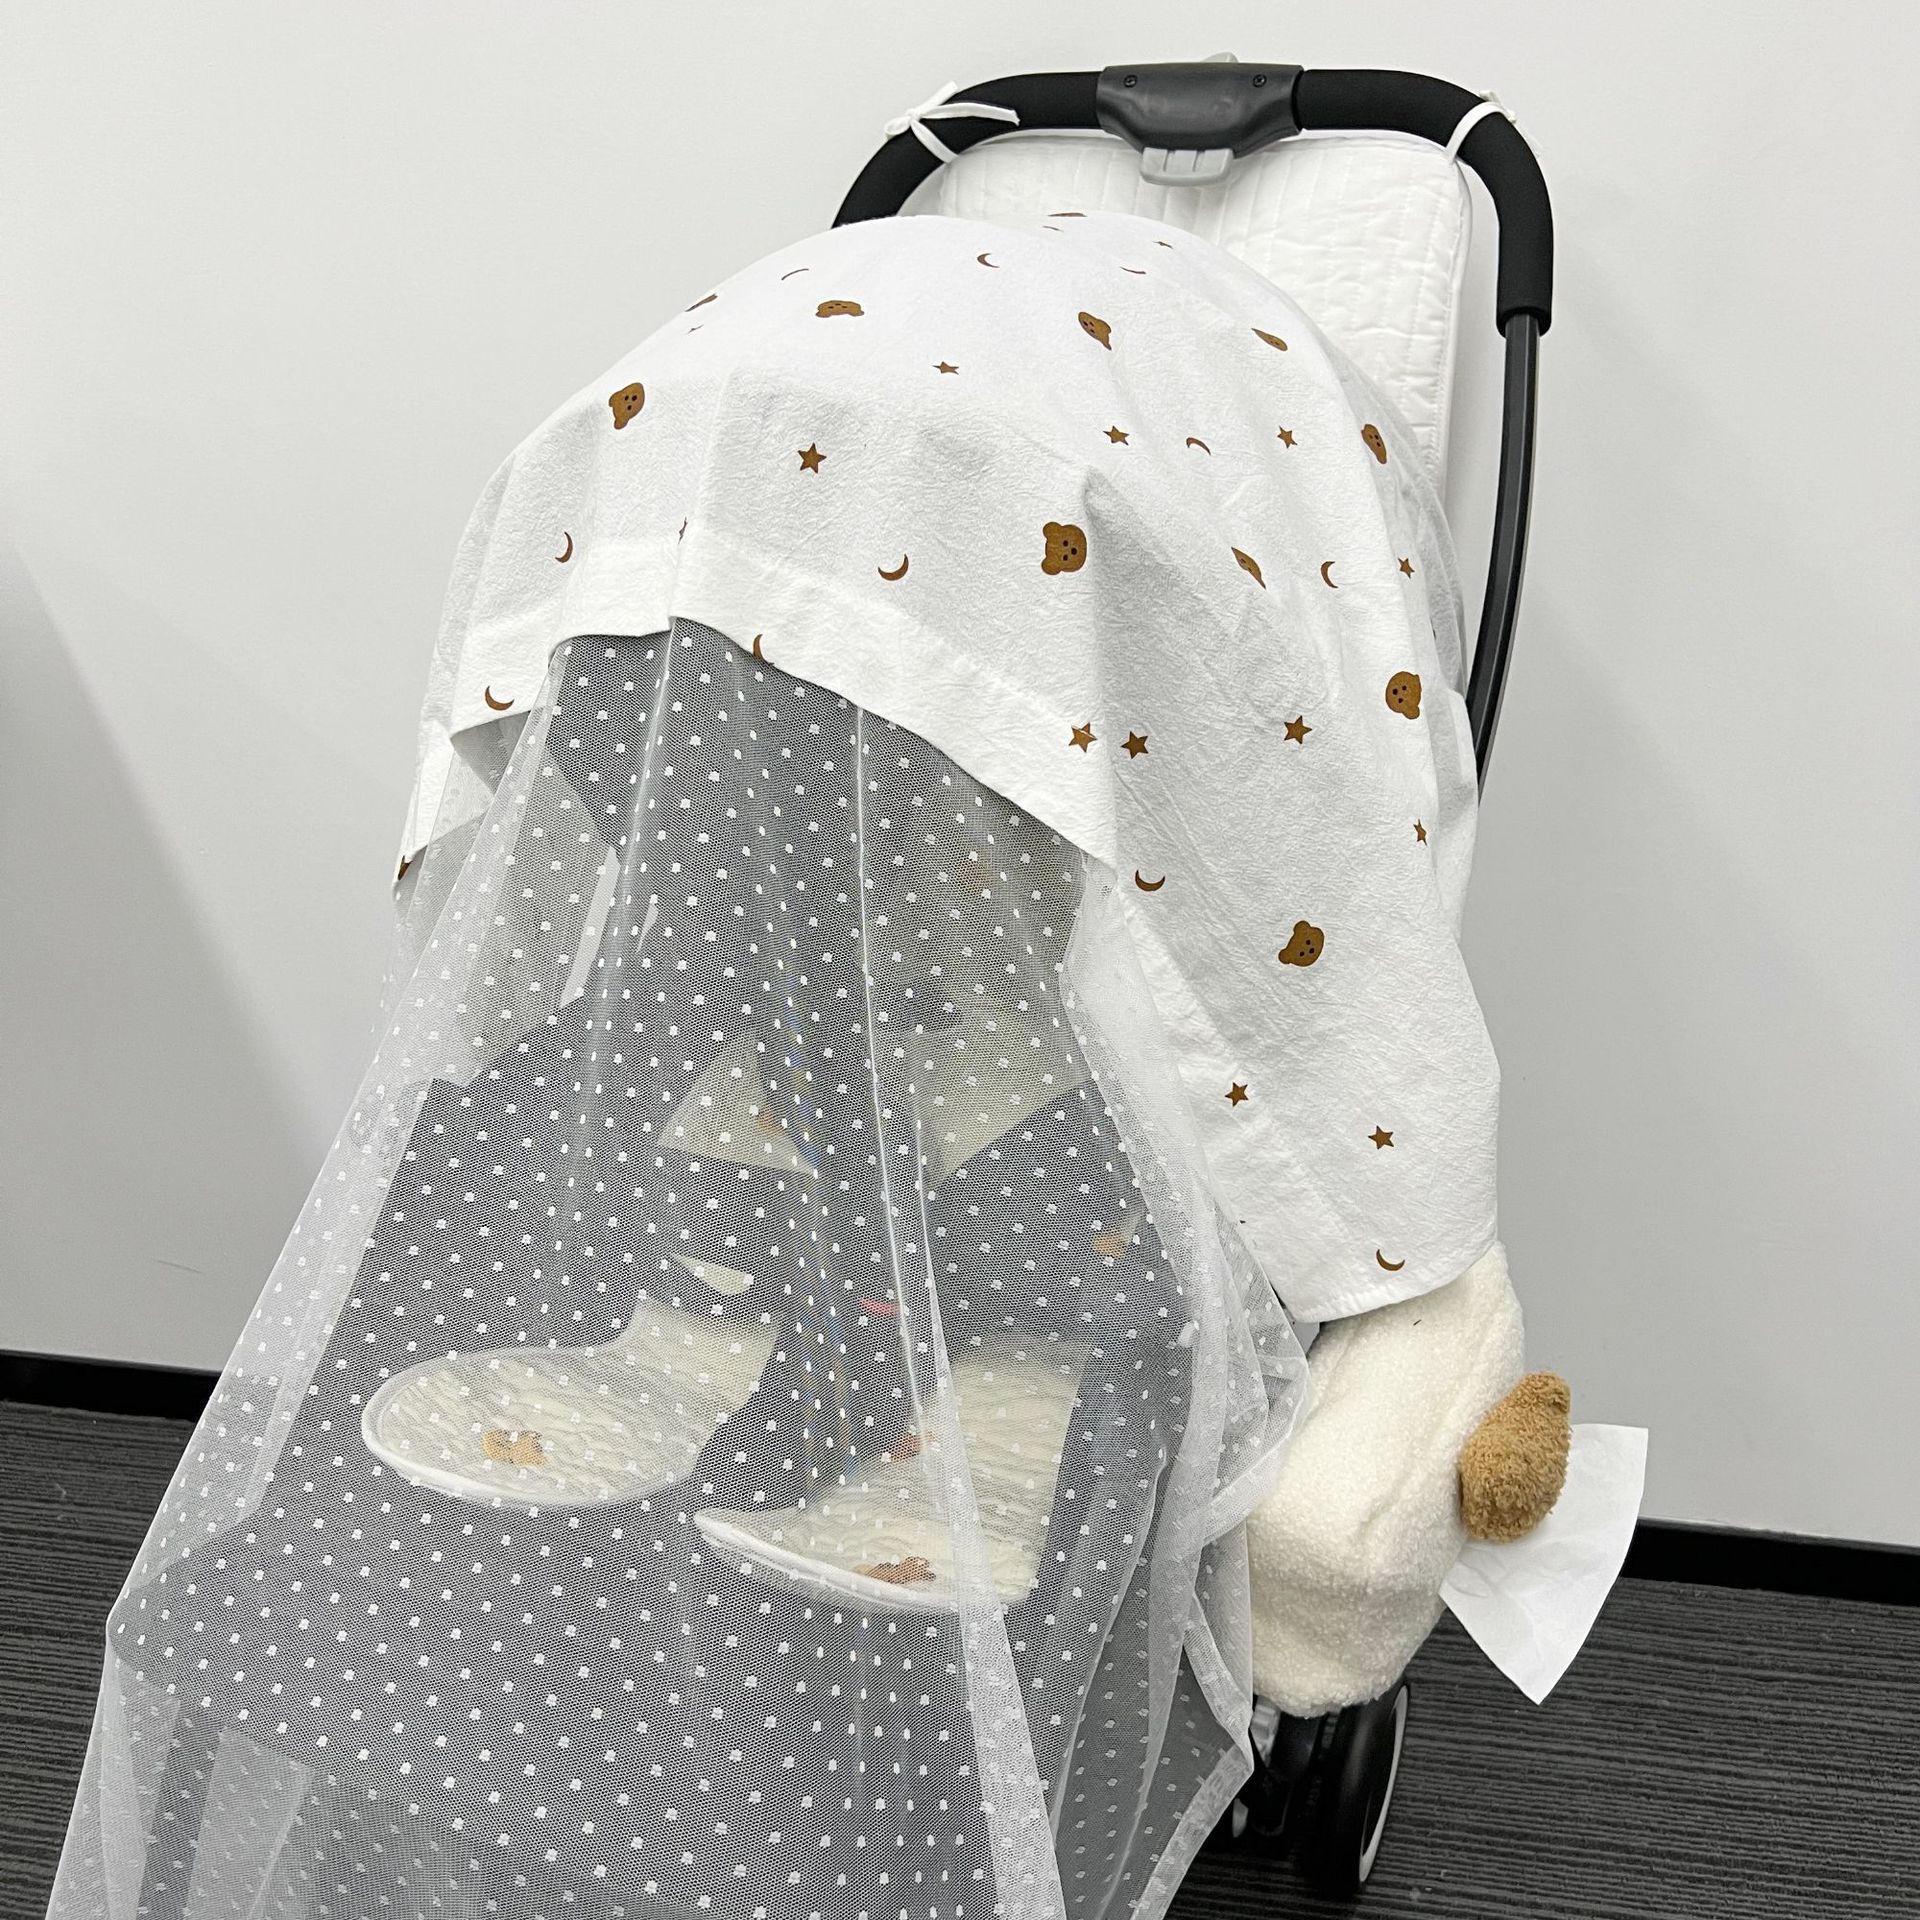 婴儿推车蚊帐可用全罩蚊帐高景观蚊帐 伞车 婴儿摇椅防蚊帐-阿里巴巴